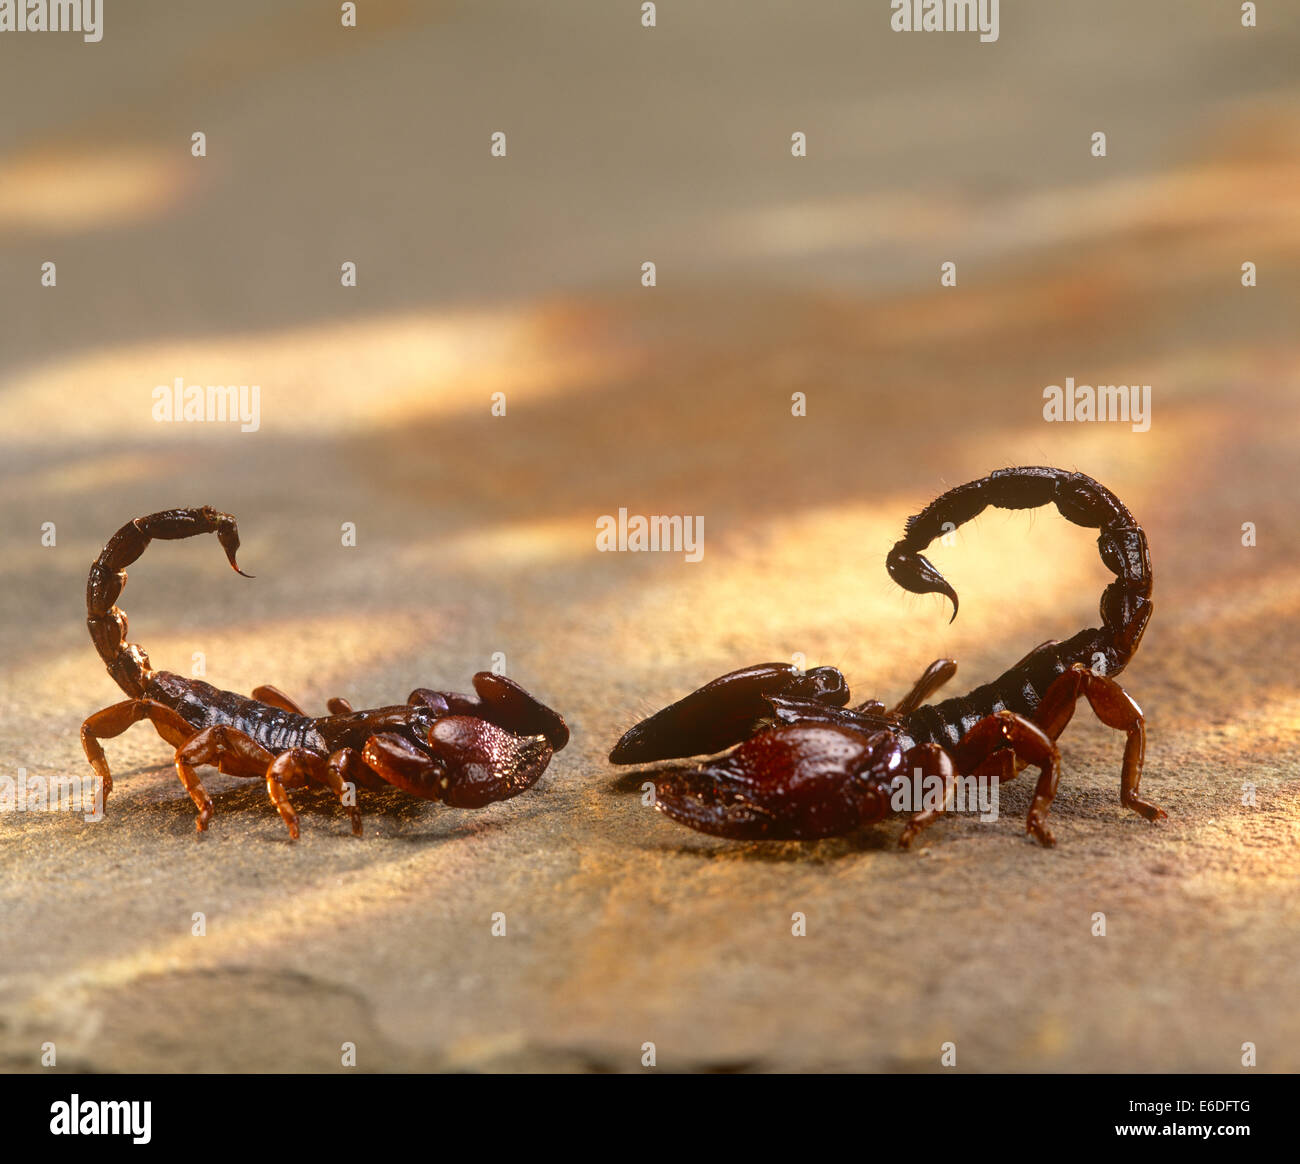 Dos escorpiones, uno frente a otro Foto de stock